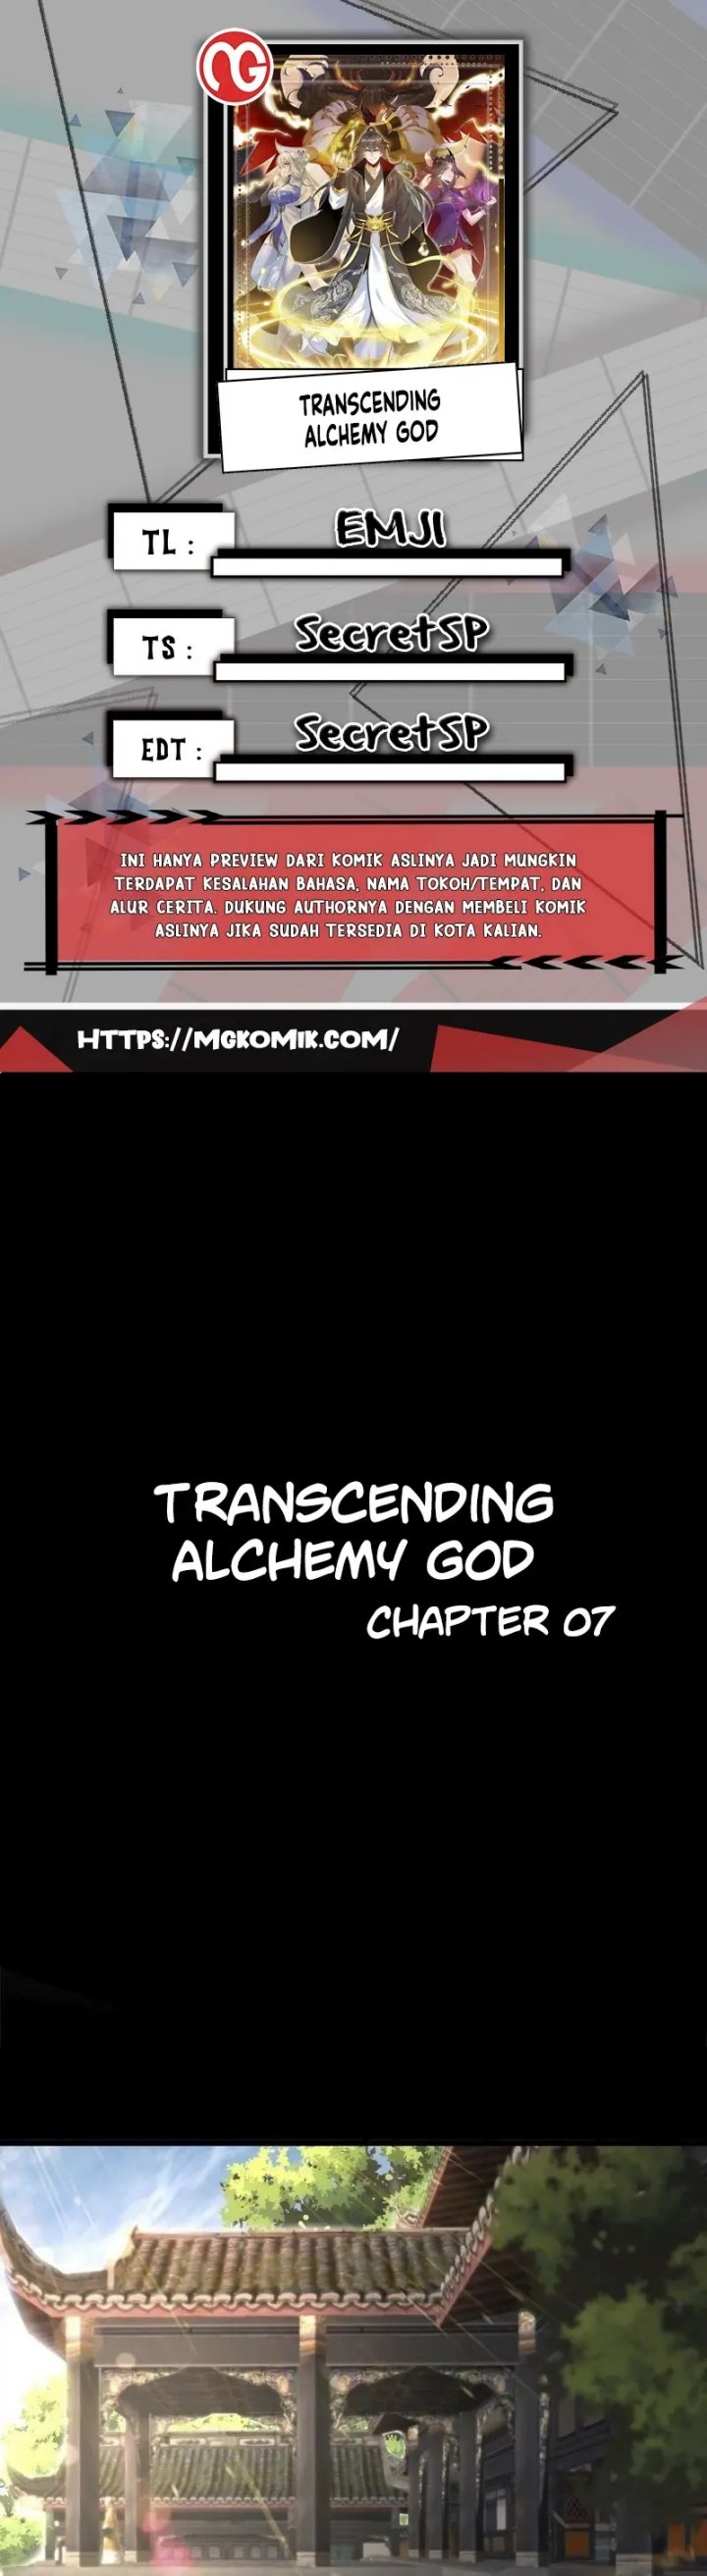 Transcending Alchemy God Chapter 07